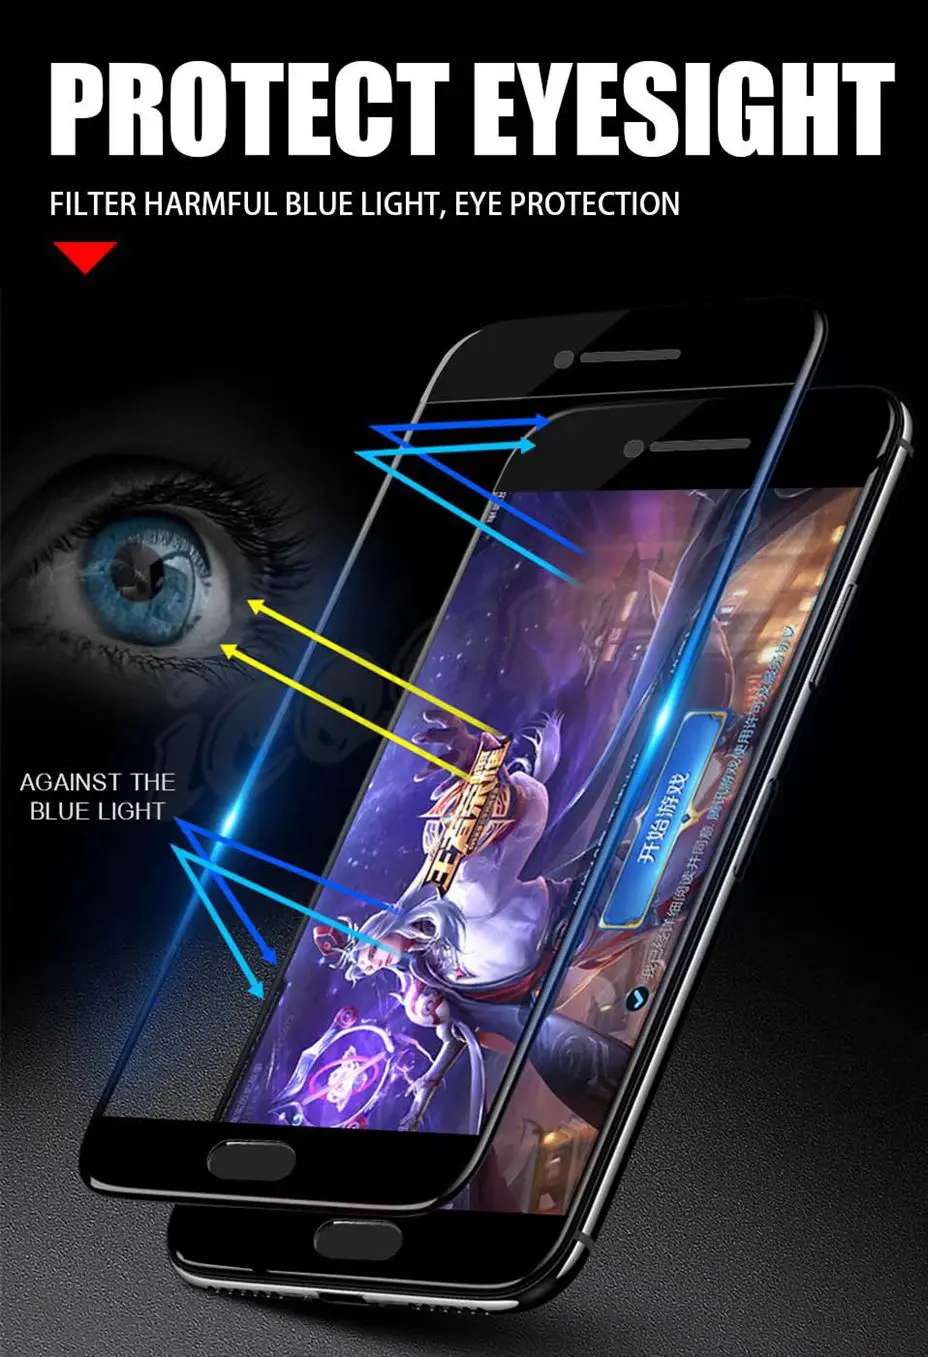 5D Glass for Xiaomi Mi A1 Glass Screen Protector Xiomi Mi 5X Mia1 Film Protective 9H Full Cover for Xiaomi Mi A1 Tempered Glass (11)